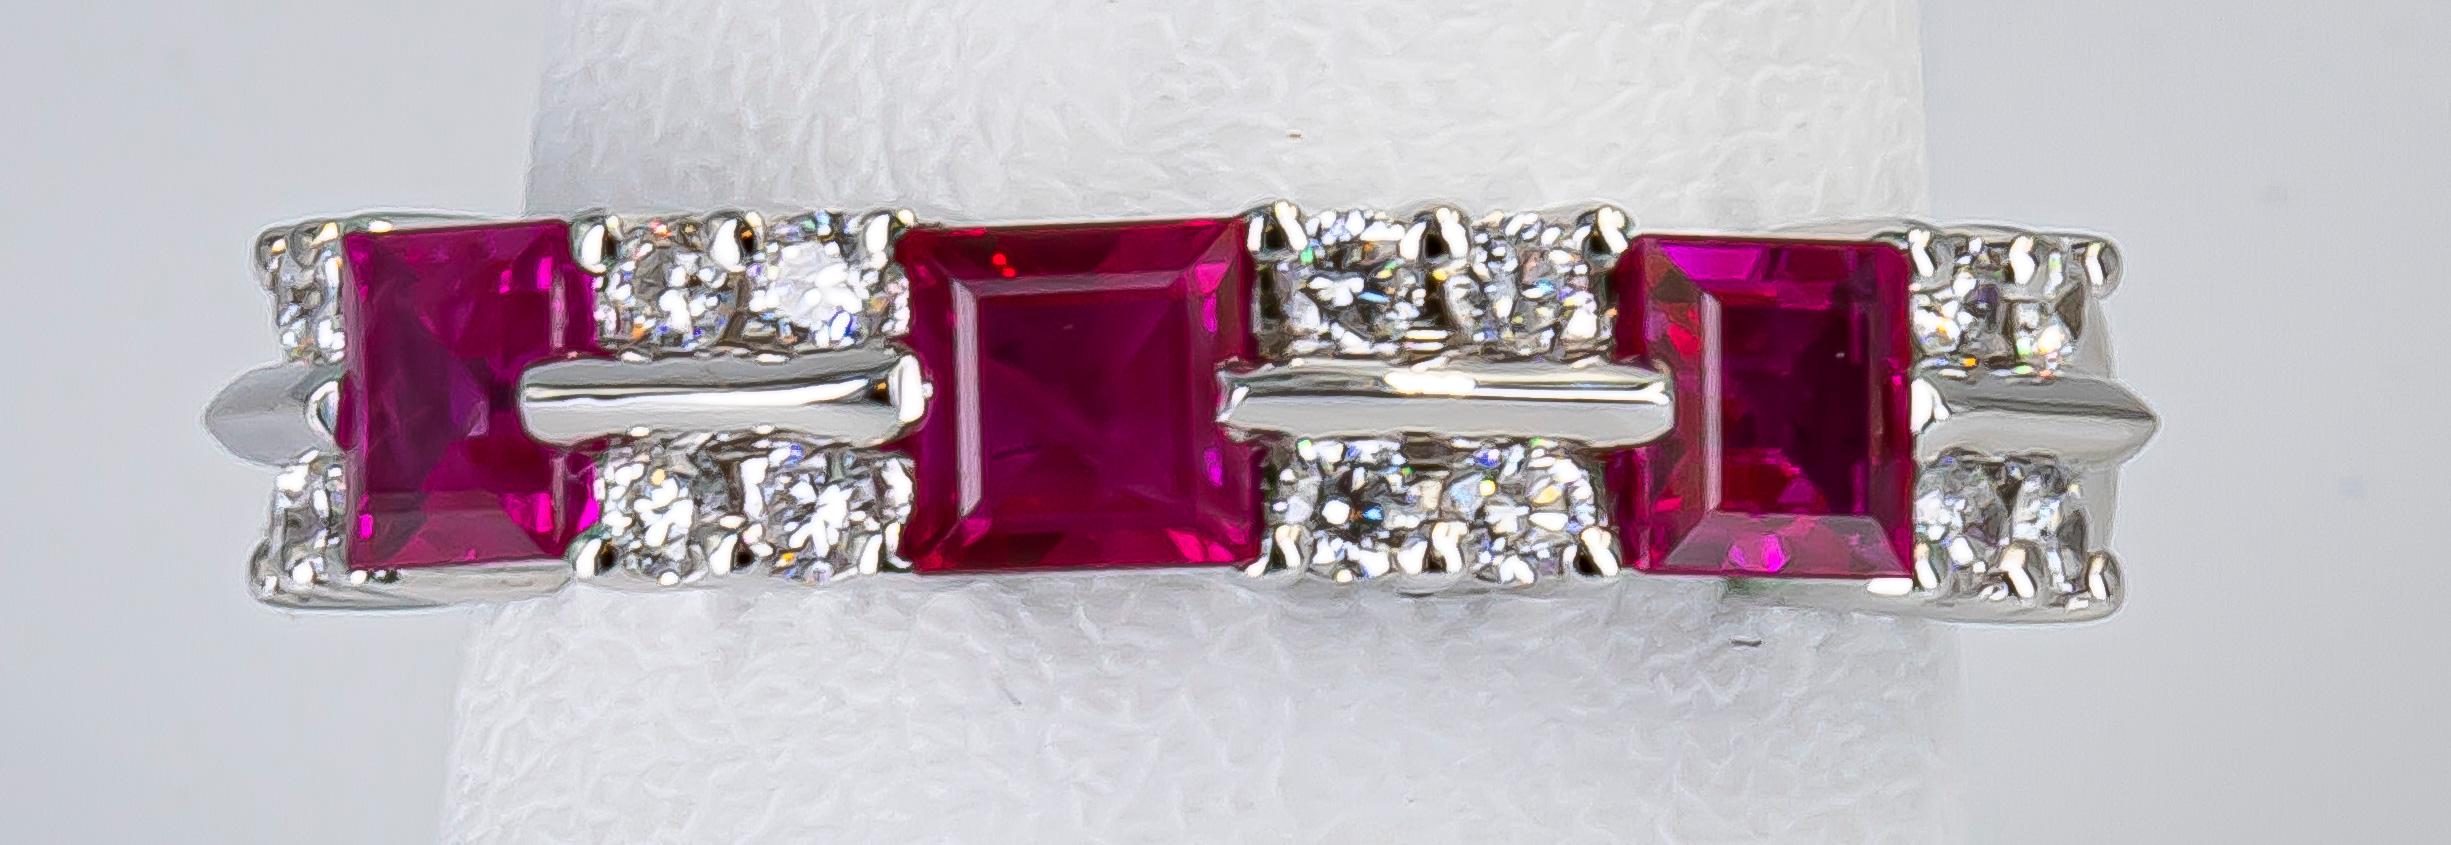 Princess Cut 1.35 Carat Ruby and Diamond Ring 18 Karat Gold